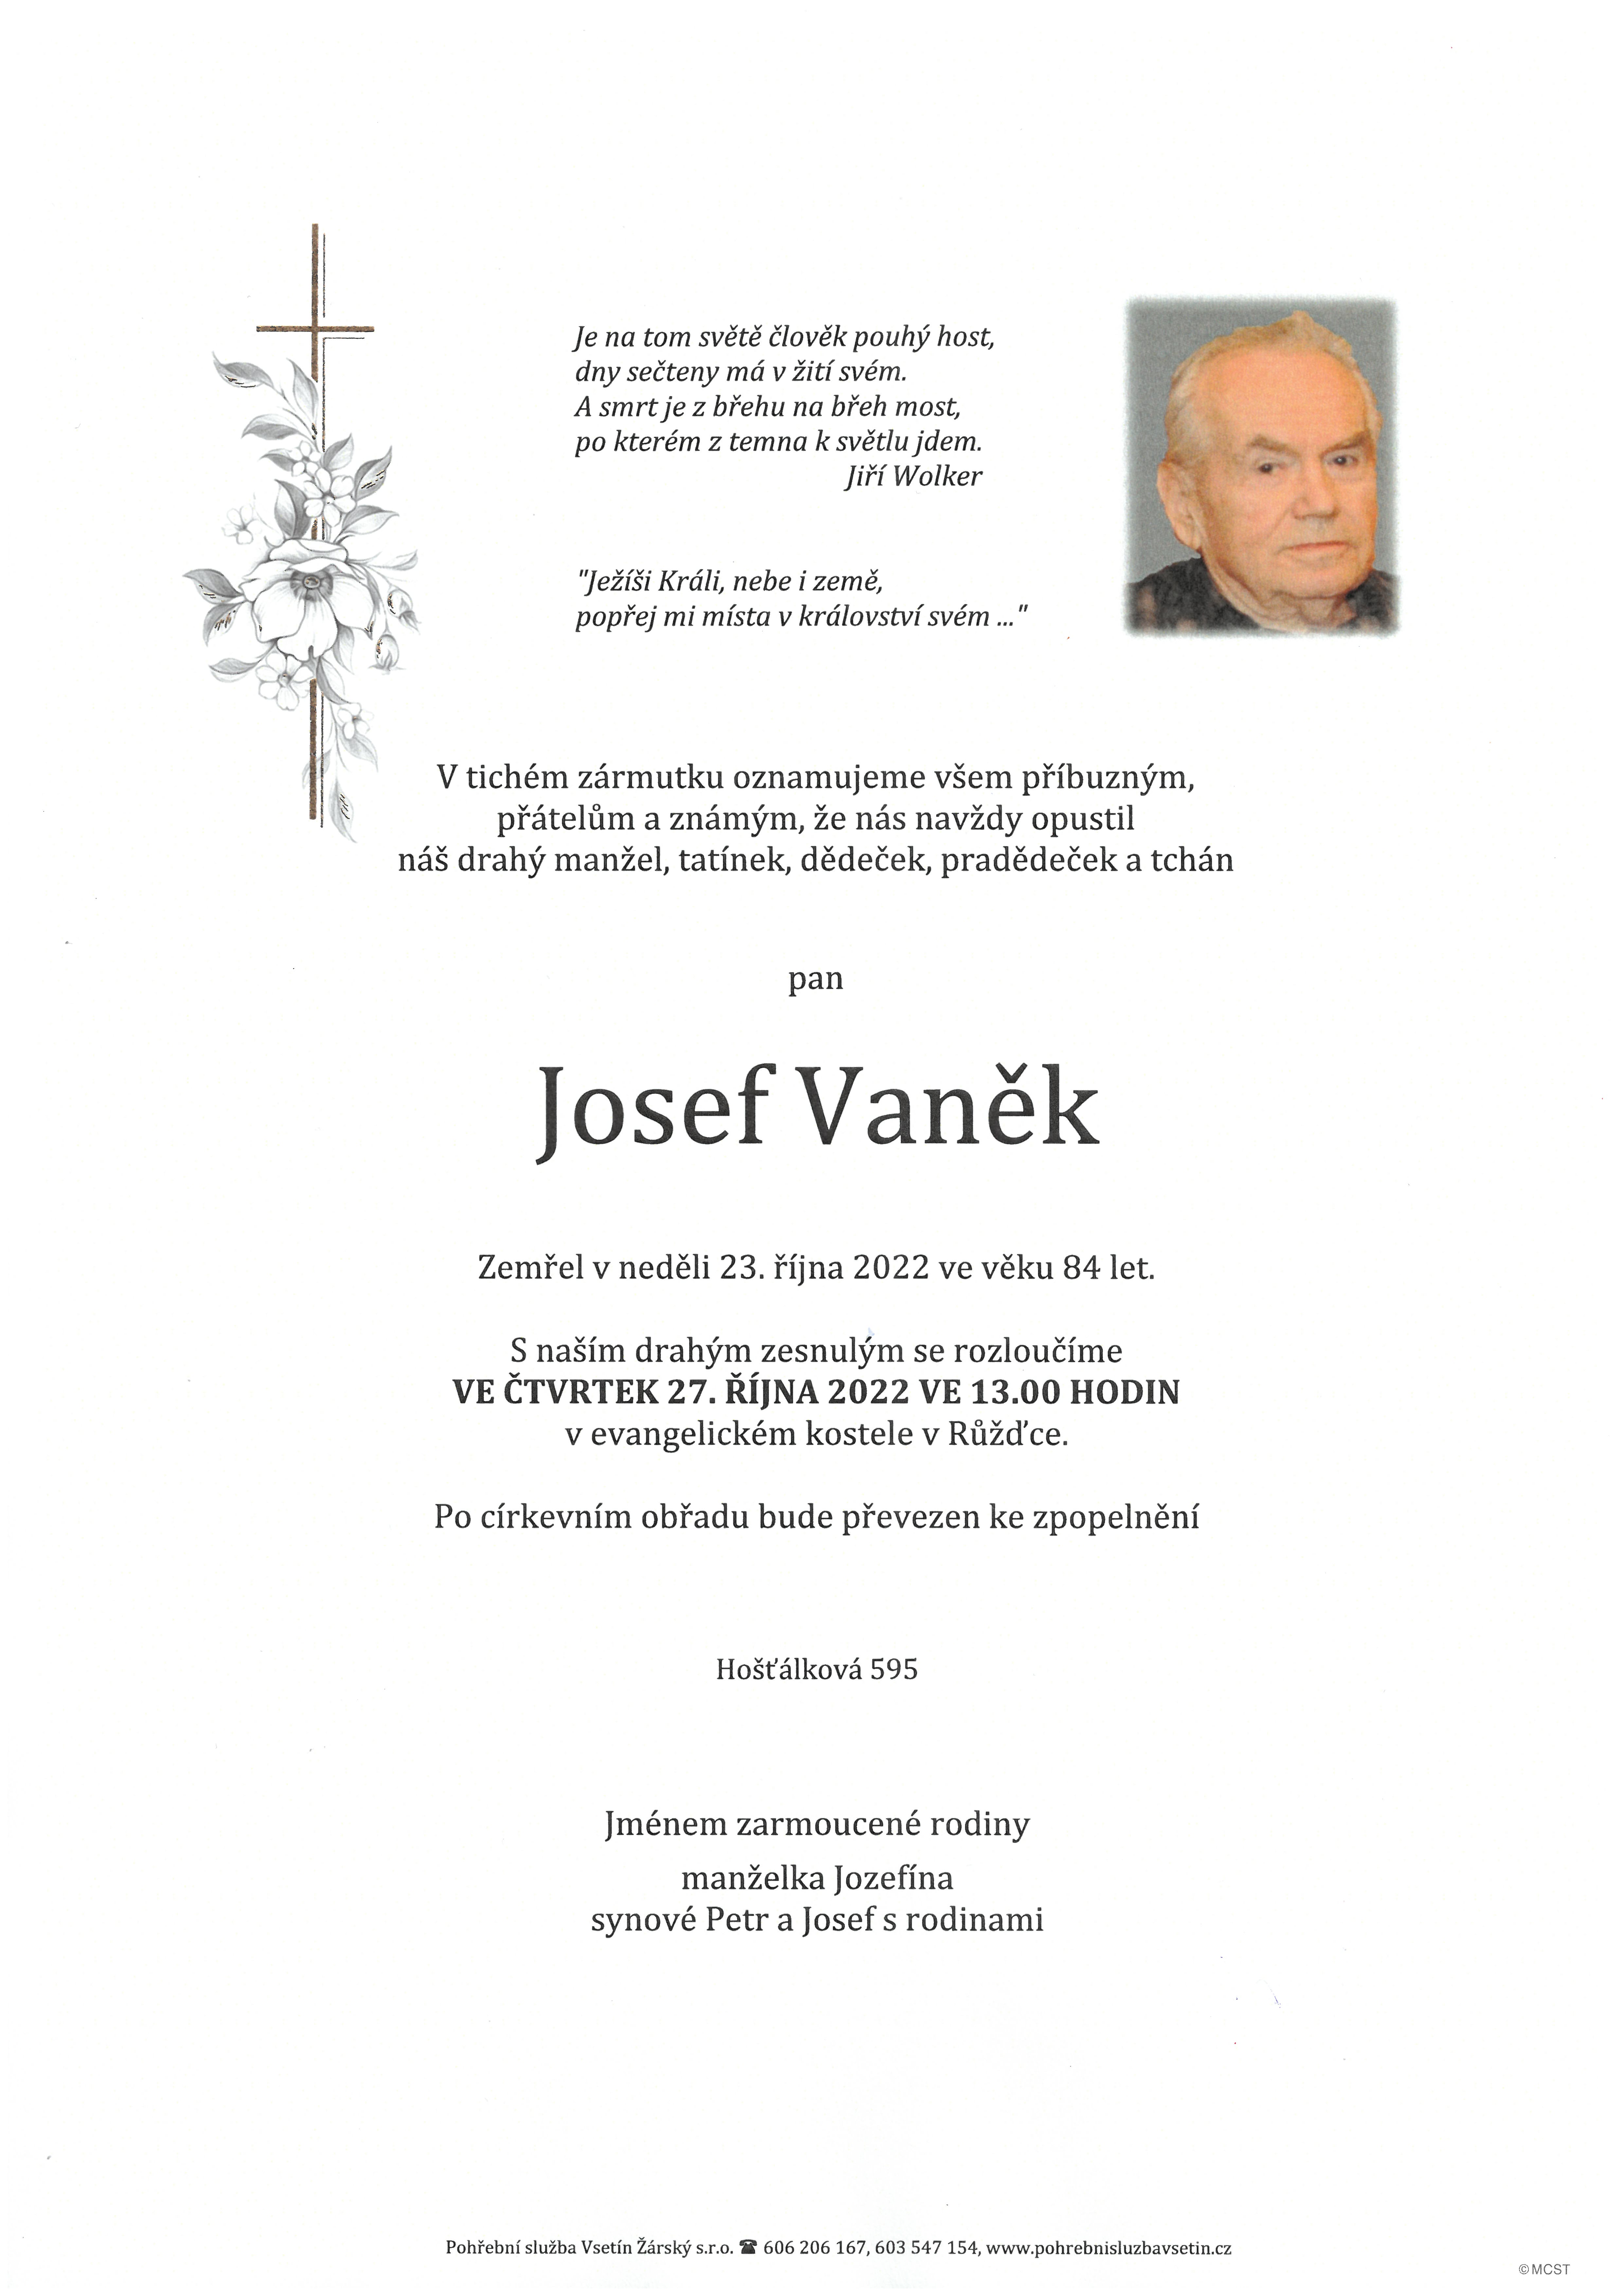 Josef Vaněk